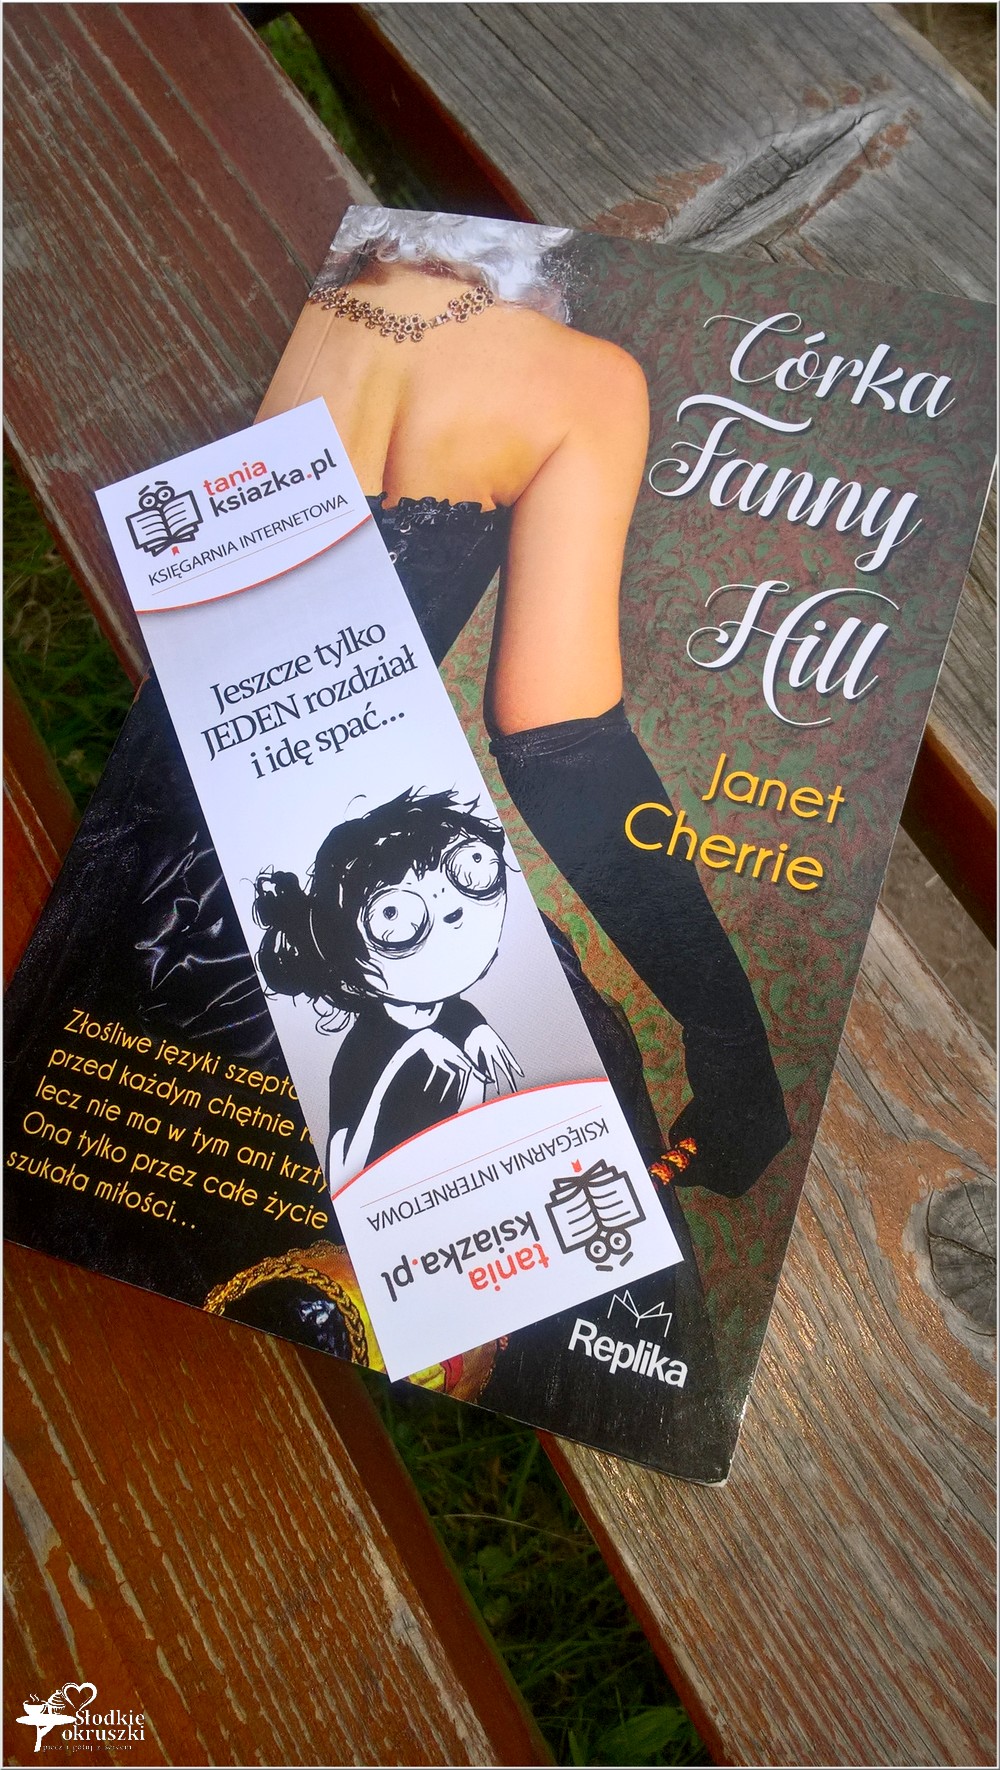 Córka Fanny Hill. Janet Cherrie (2)